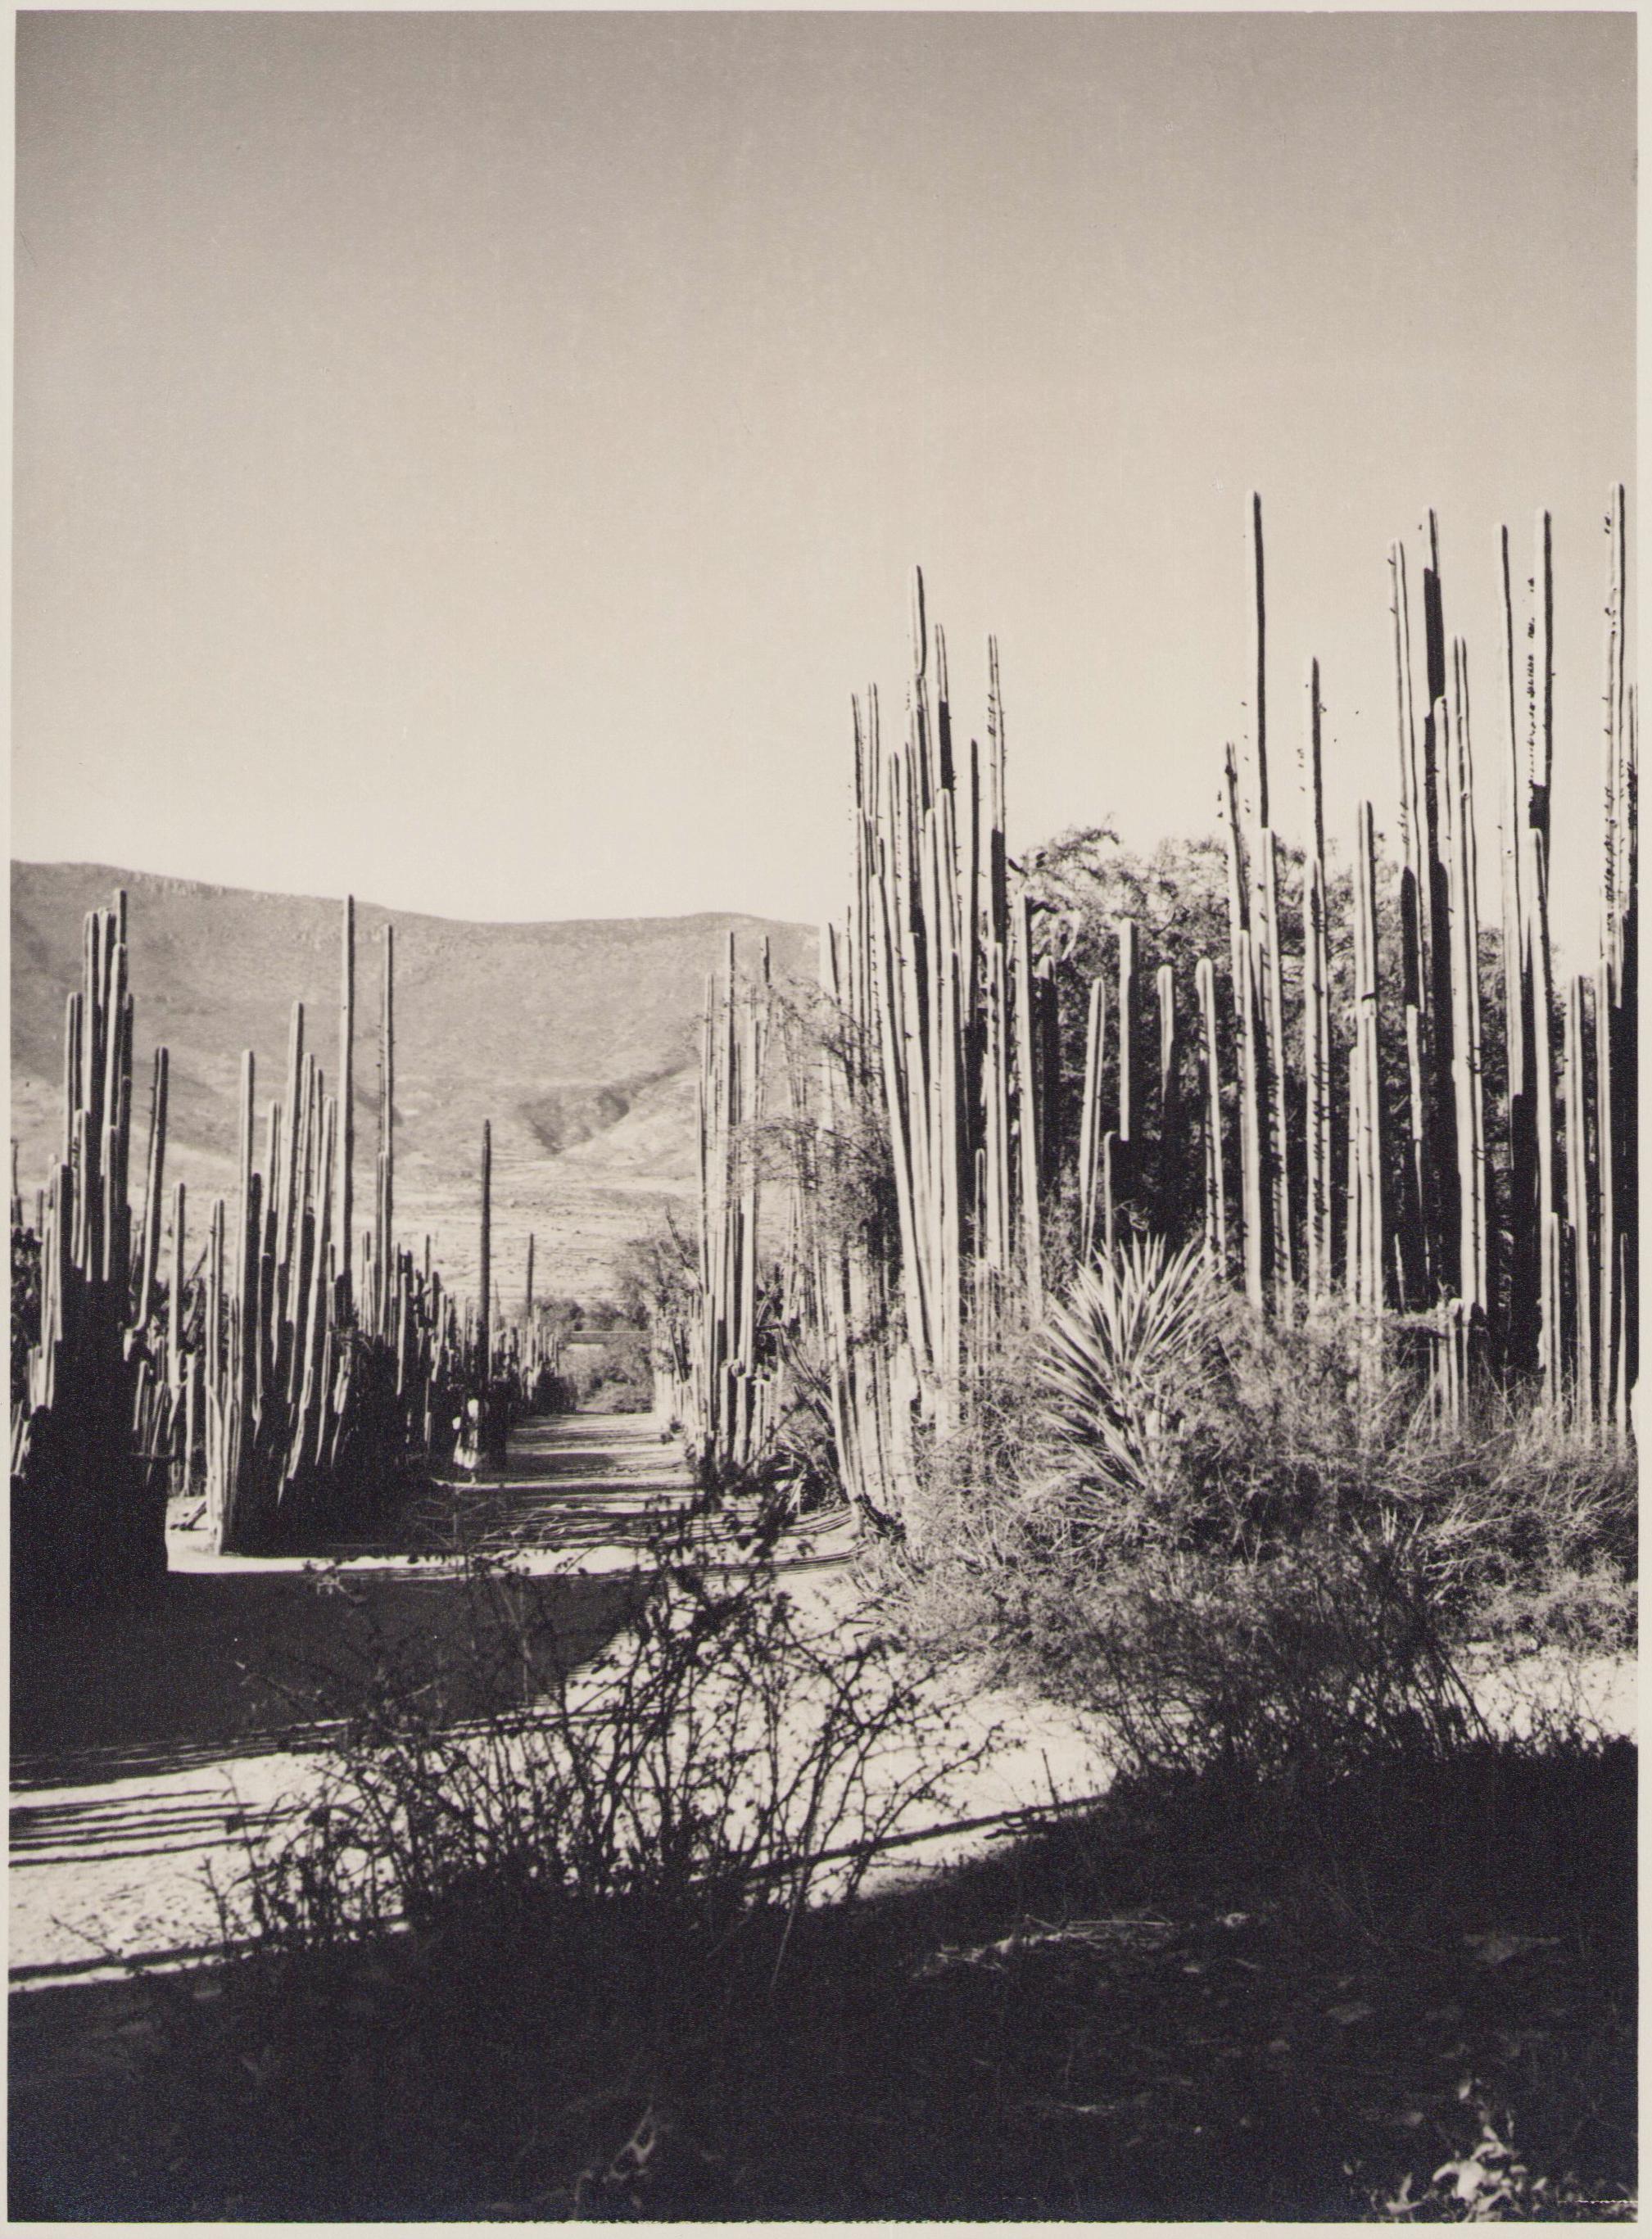 Hanna Seidel Portrait Photograph - Mexico, Landscape, Black and White Photography, 1960s, 23, 2 x 17, 2 cm